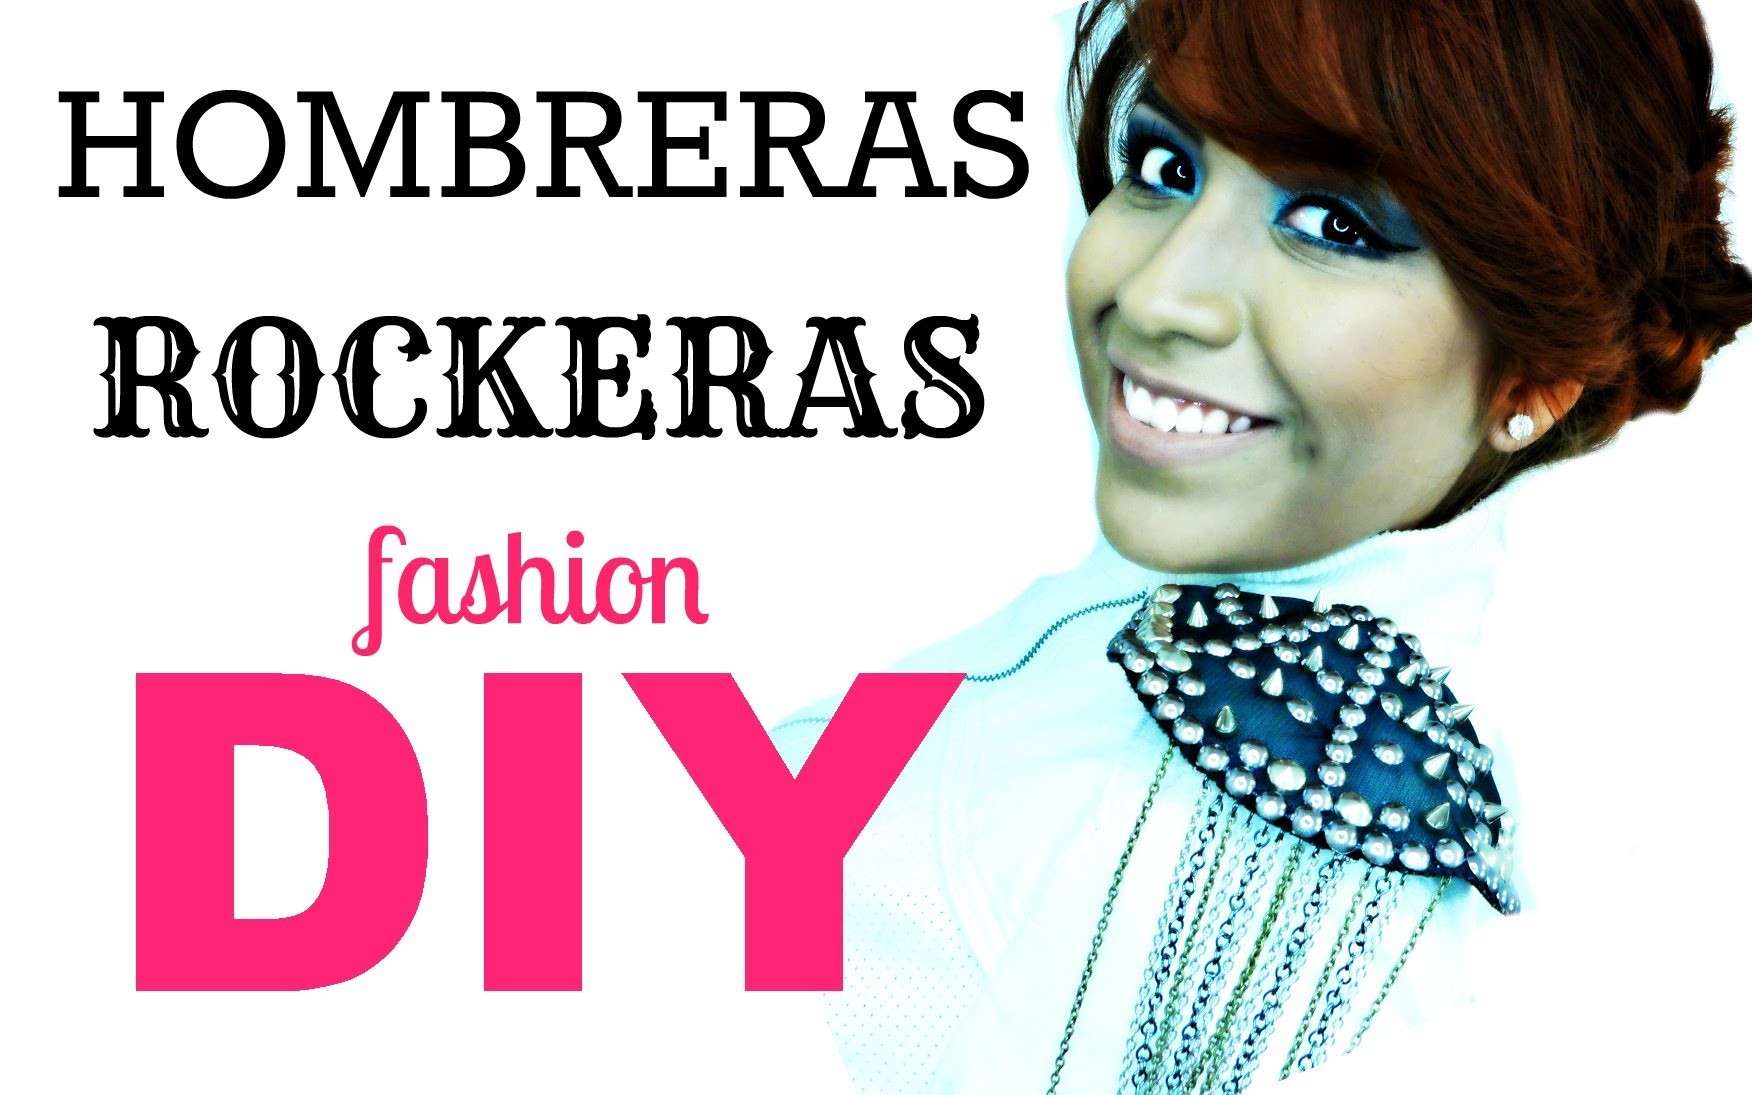 Fashion DIY: Hombreras Rockeras ♥ Royal LAMP